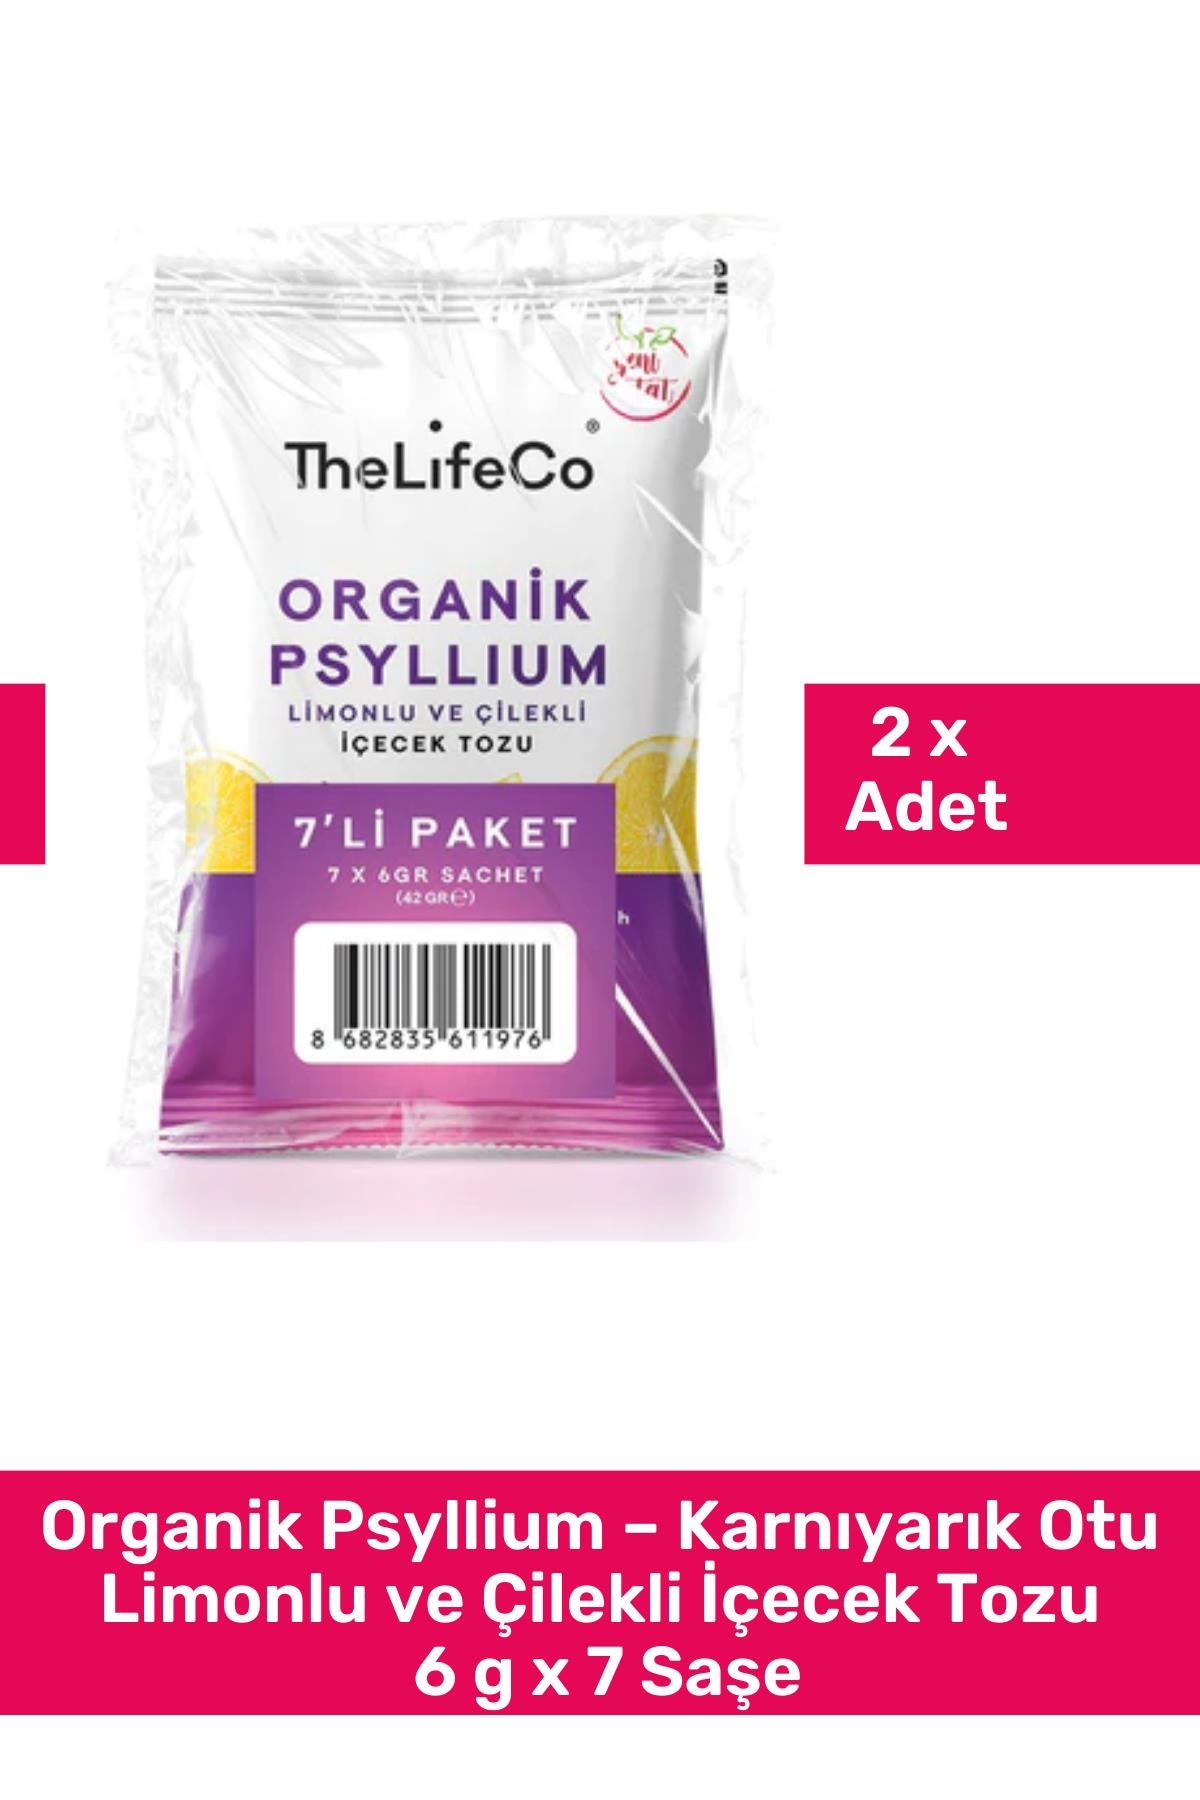 TheLifeCo Organik Psyllium – Karnıyarık Otu Limonlu ve Çilekli İçecek Tozu 6 g x 7 Saşe 2'li Paket